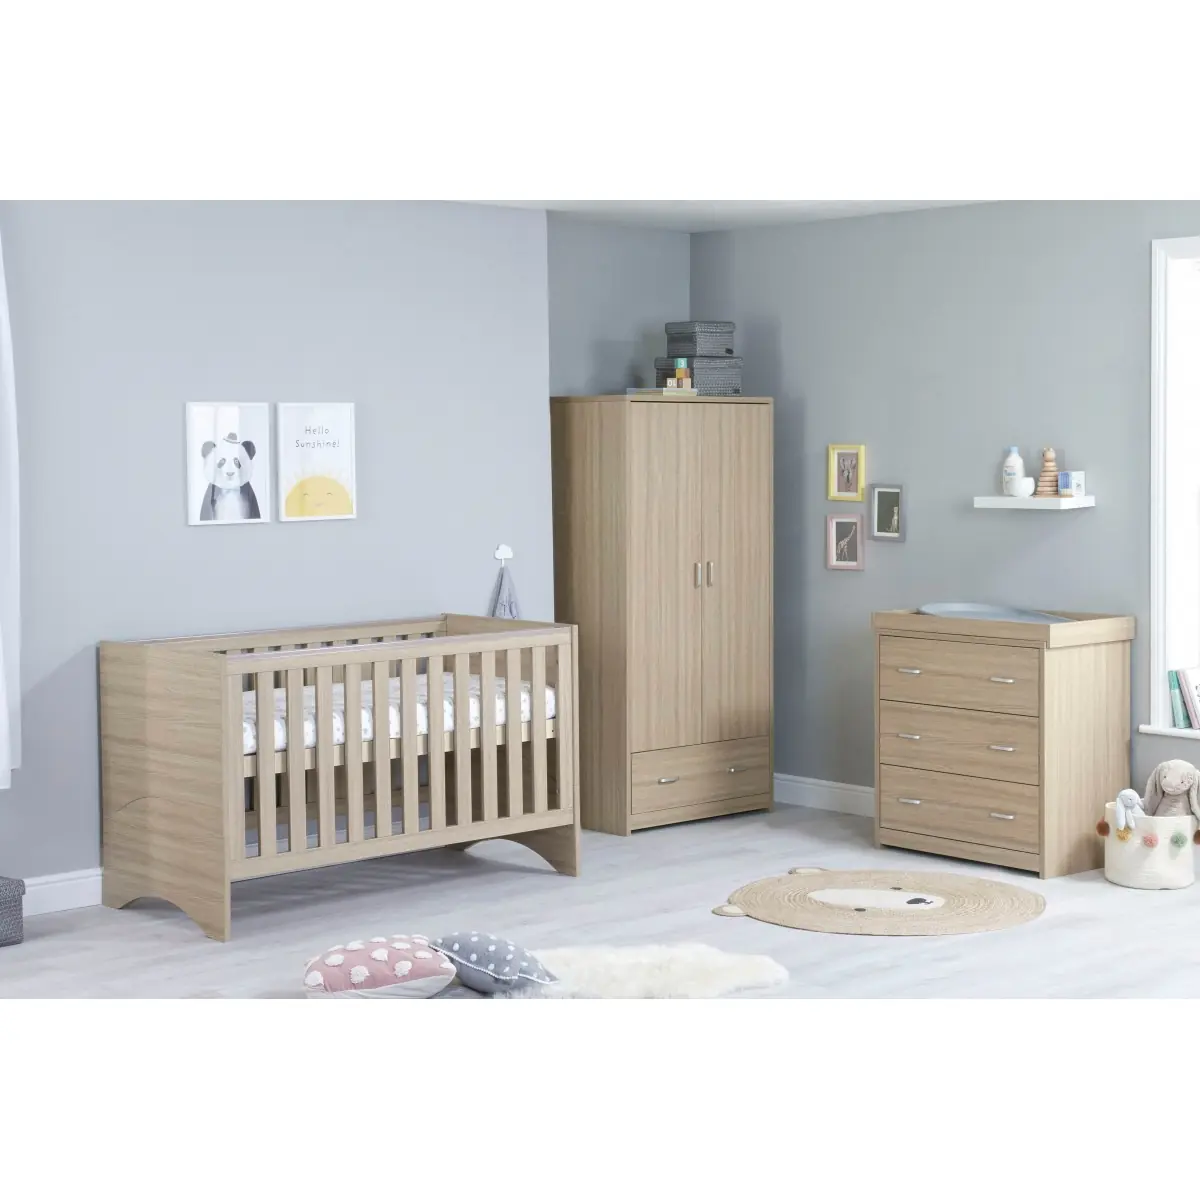 Image of Babymore Veni 3 Piece Furniture Room Set-Oak